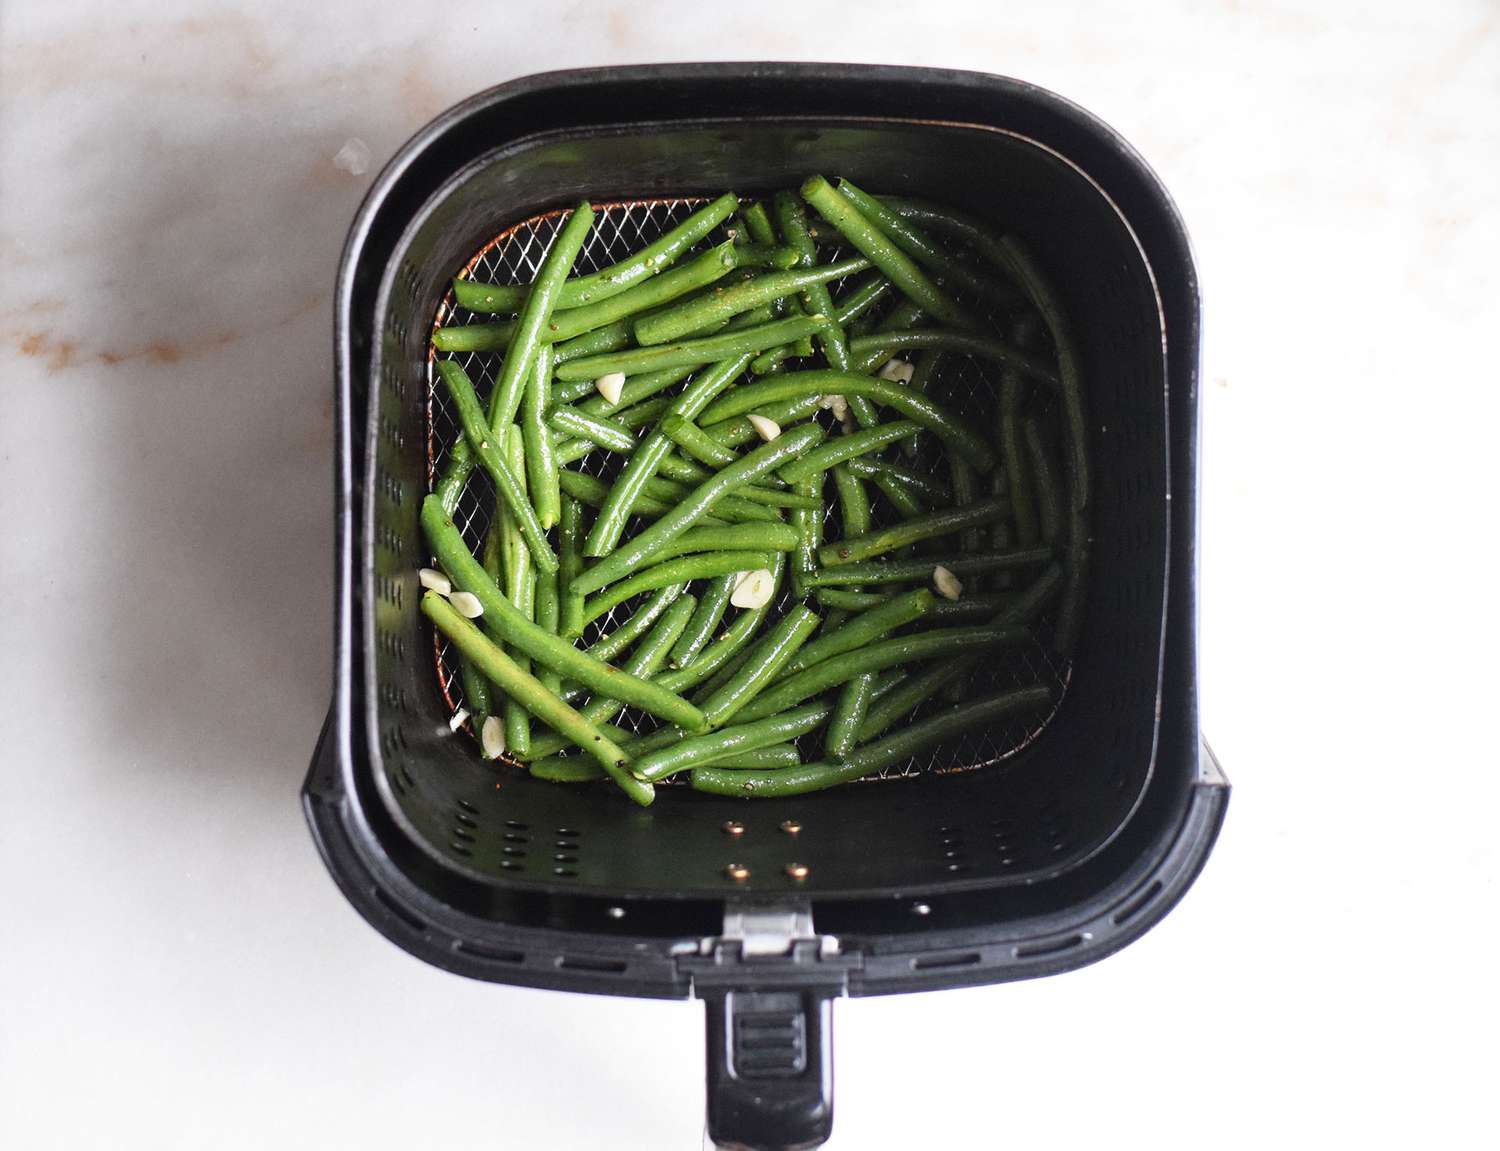 green beans in an air fryer